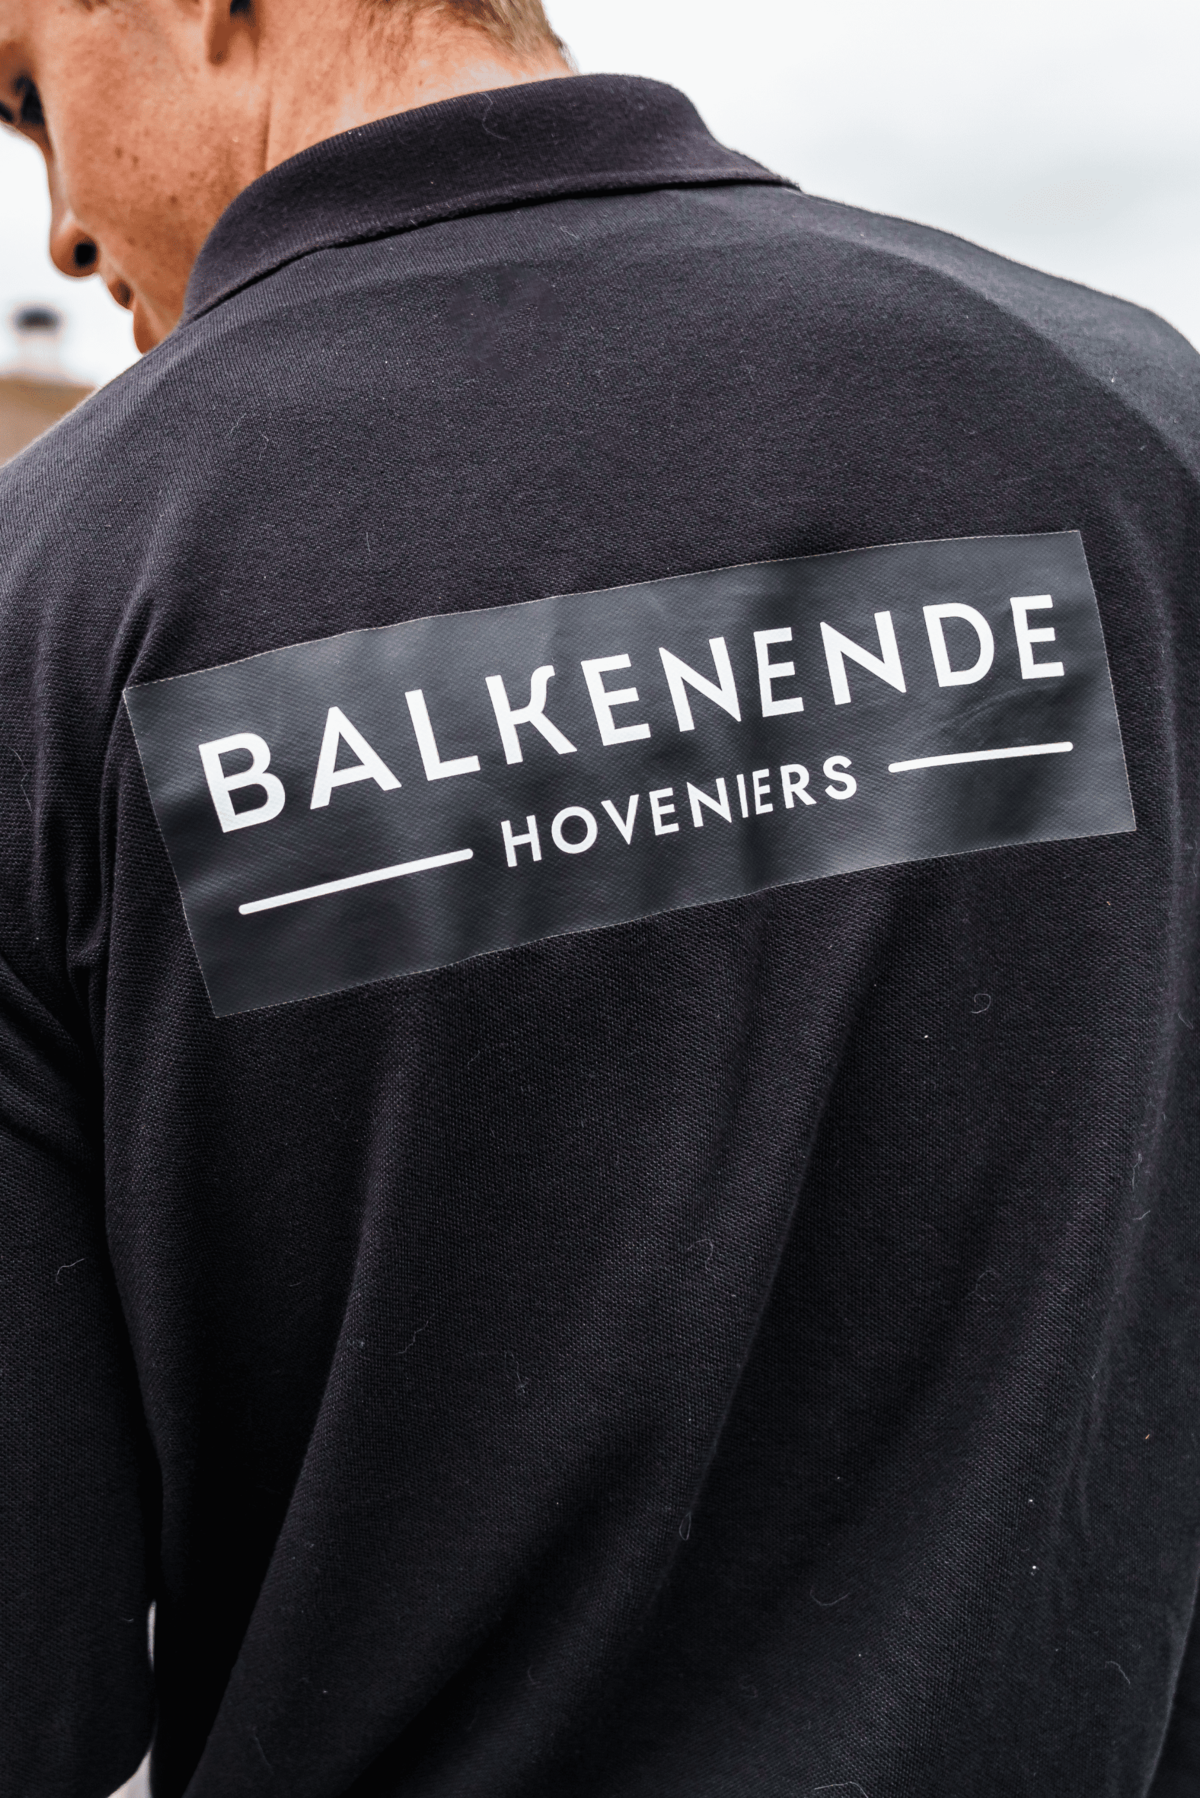 Achterkant van een shirt van Balkenende